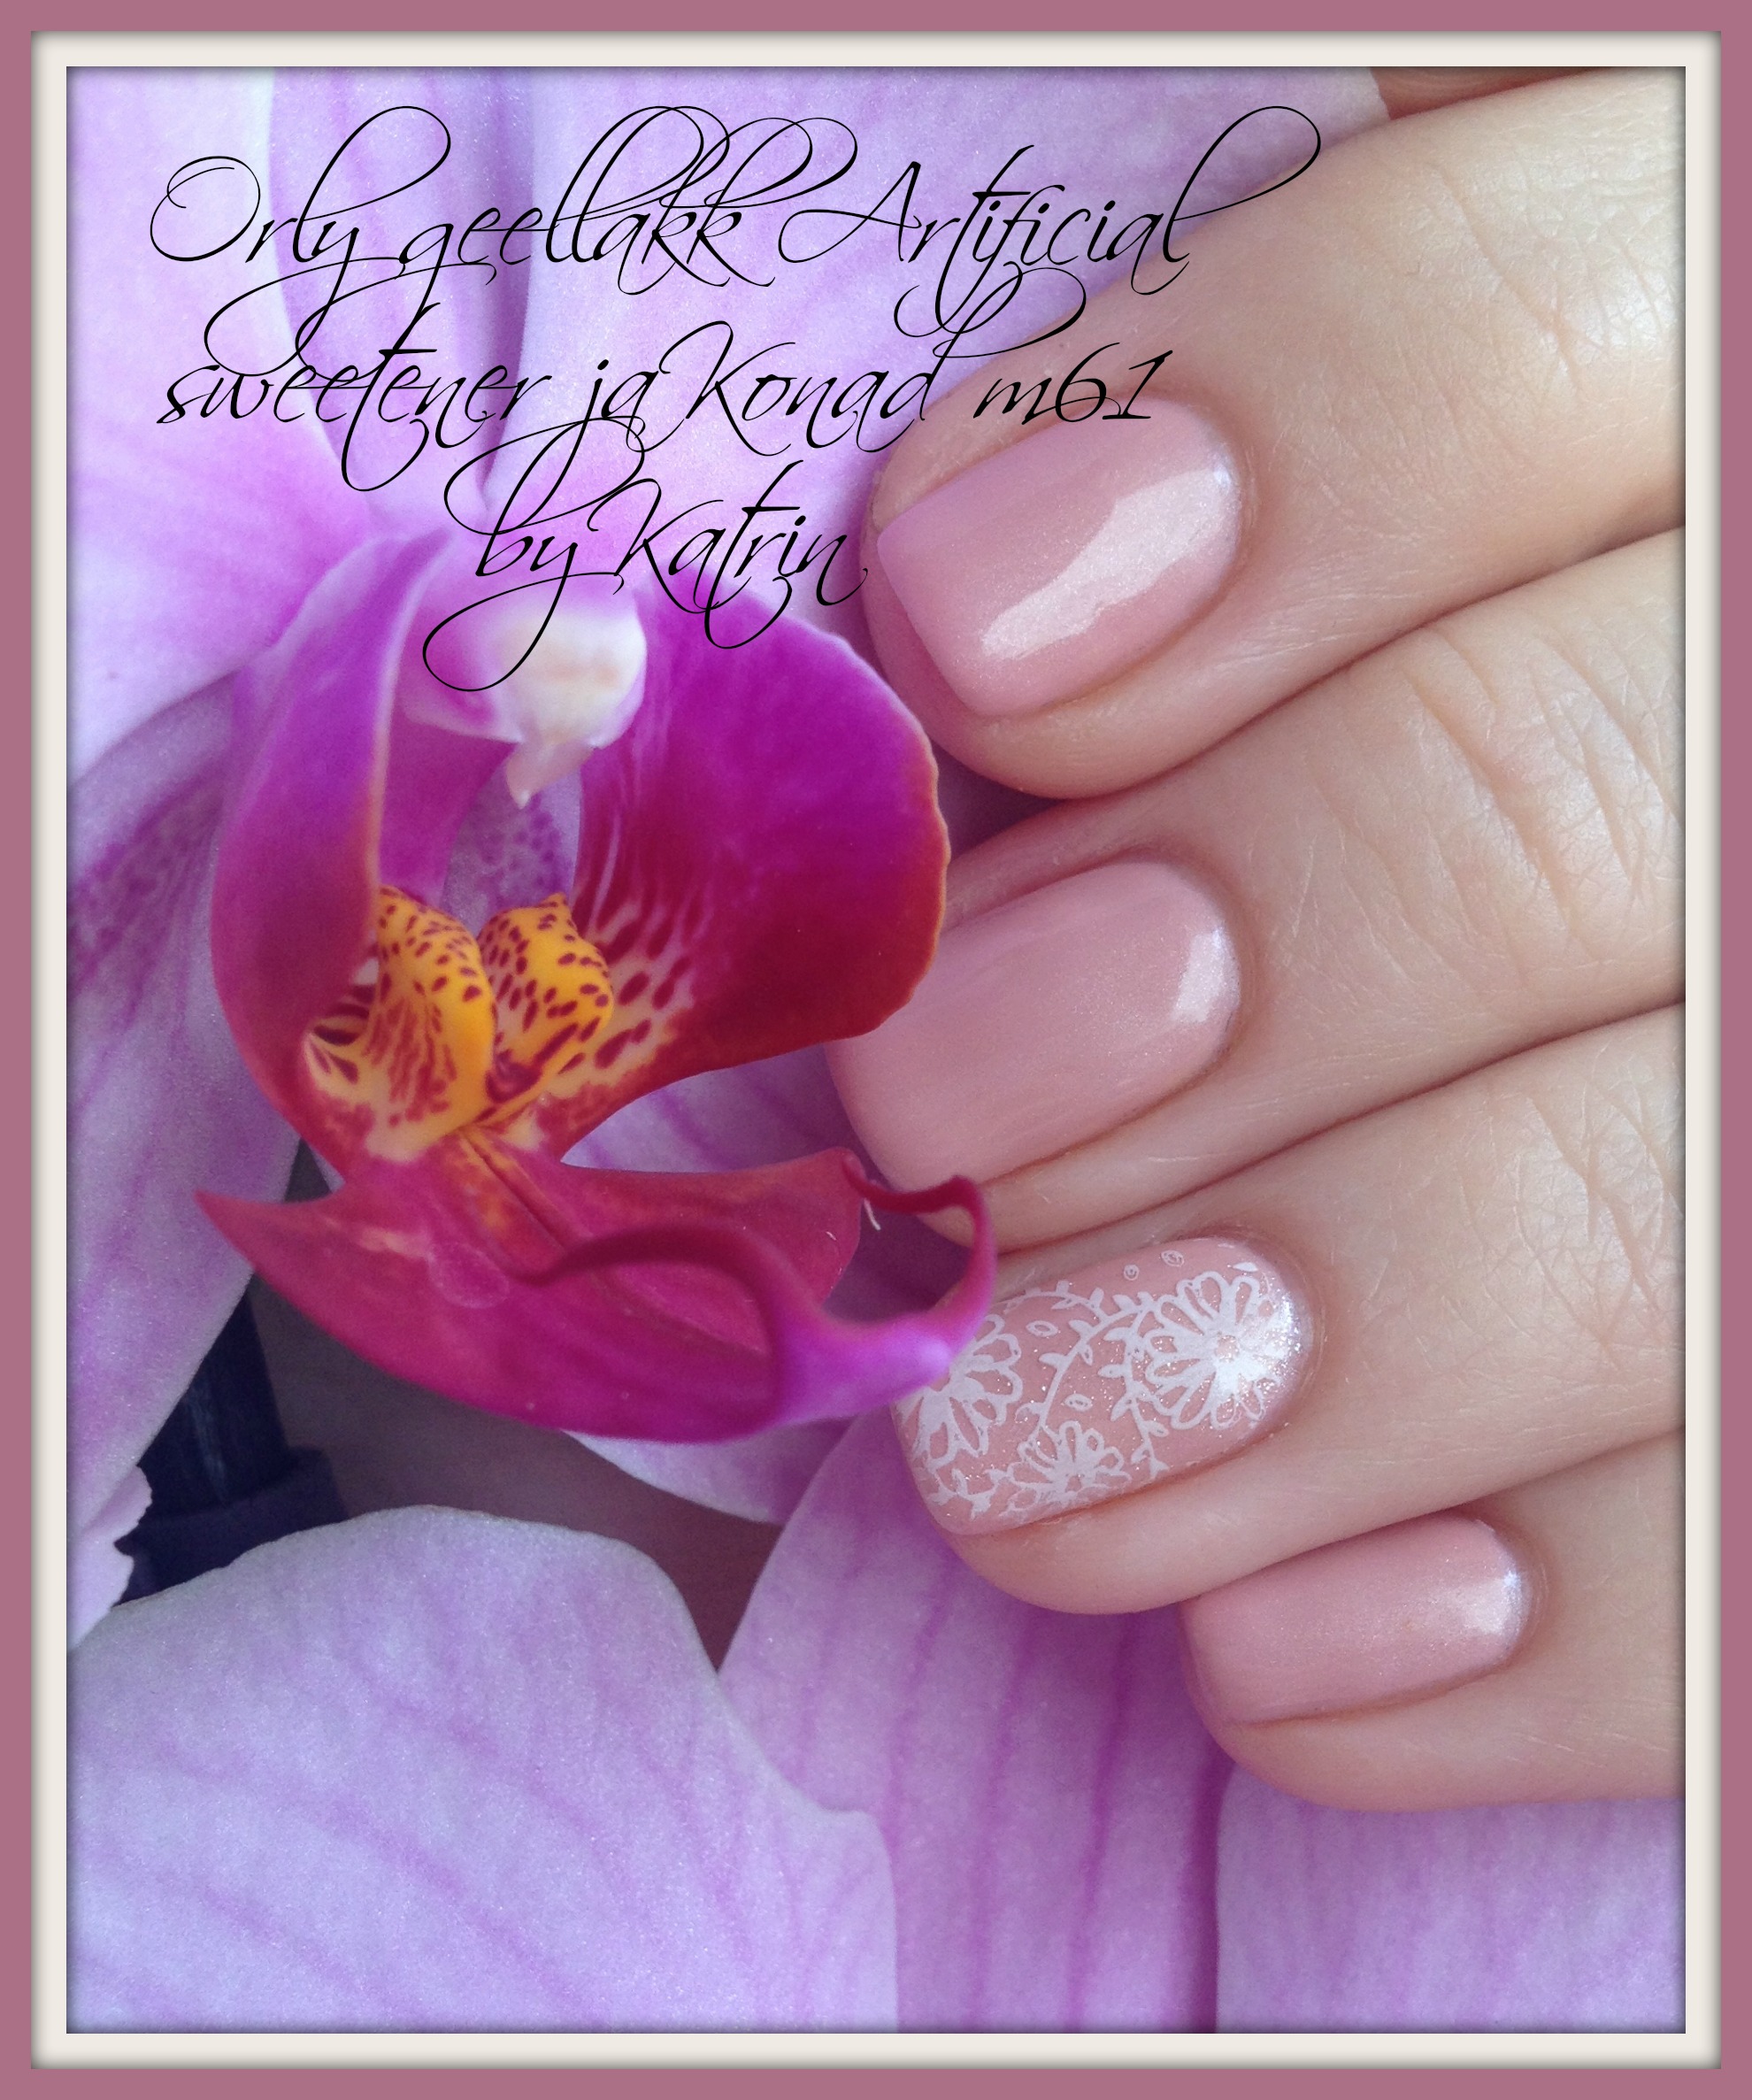 Gel polish manicure with Konad m61.jpg